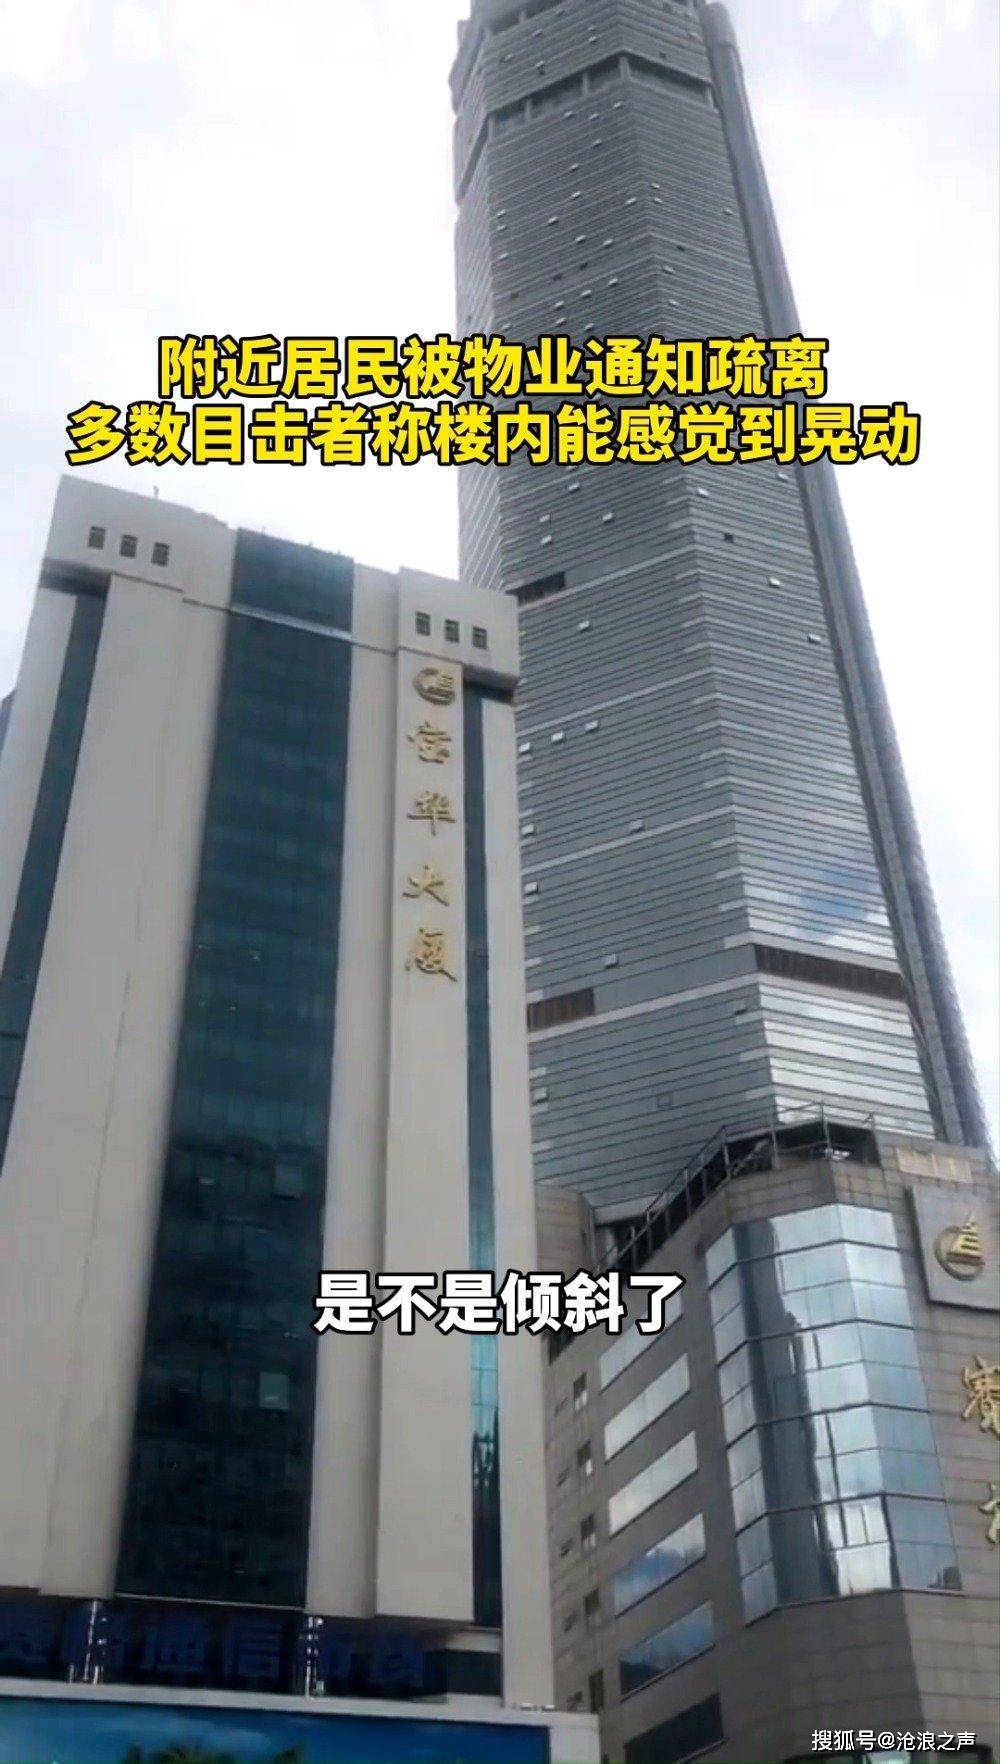 极目新闻记者注意到,早在5月13日,便有赛格大厦的商户反映大楼有震动